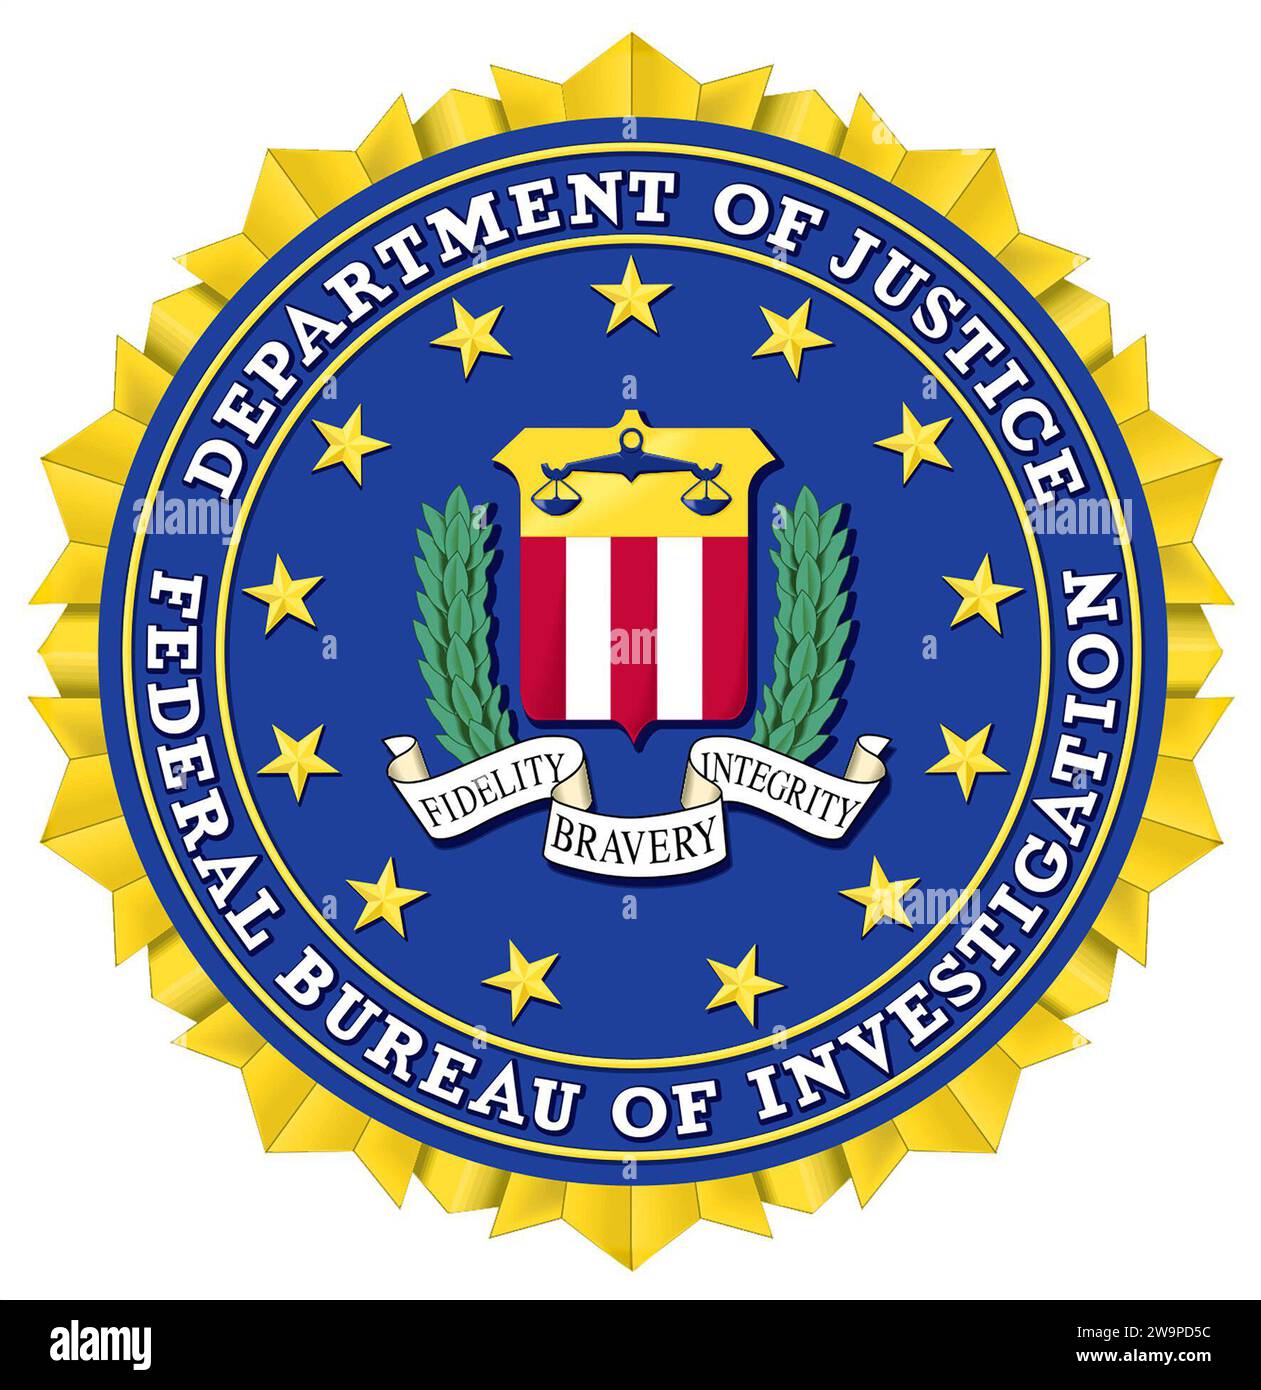 FBI-Logo. Logo des Bundesforschungsamtes. Vom Standpunkt des Urheberrechts aus gemeinfreie Daten, es gelten jedoch andere Einschränkungen. In den USA wird die unbefugte Verwendung von FBI-Siegel, -Namen und -Initialen nach Bundesstrafrecht strafrechtlich verfolgt. Stockfoto